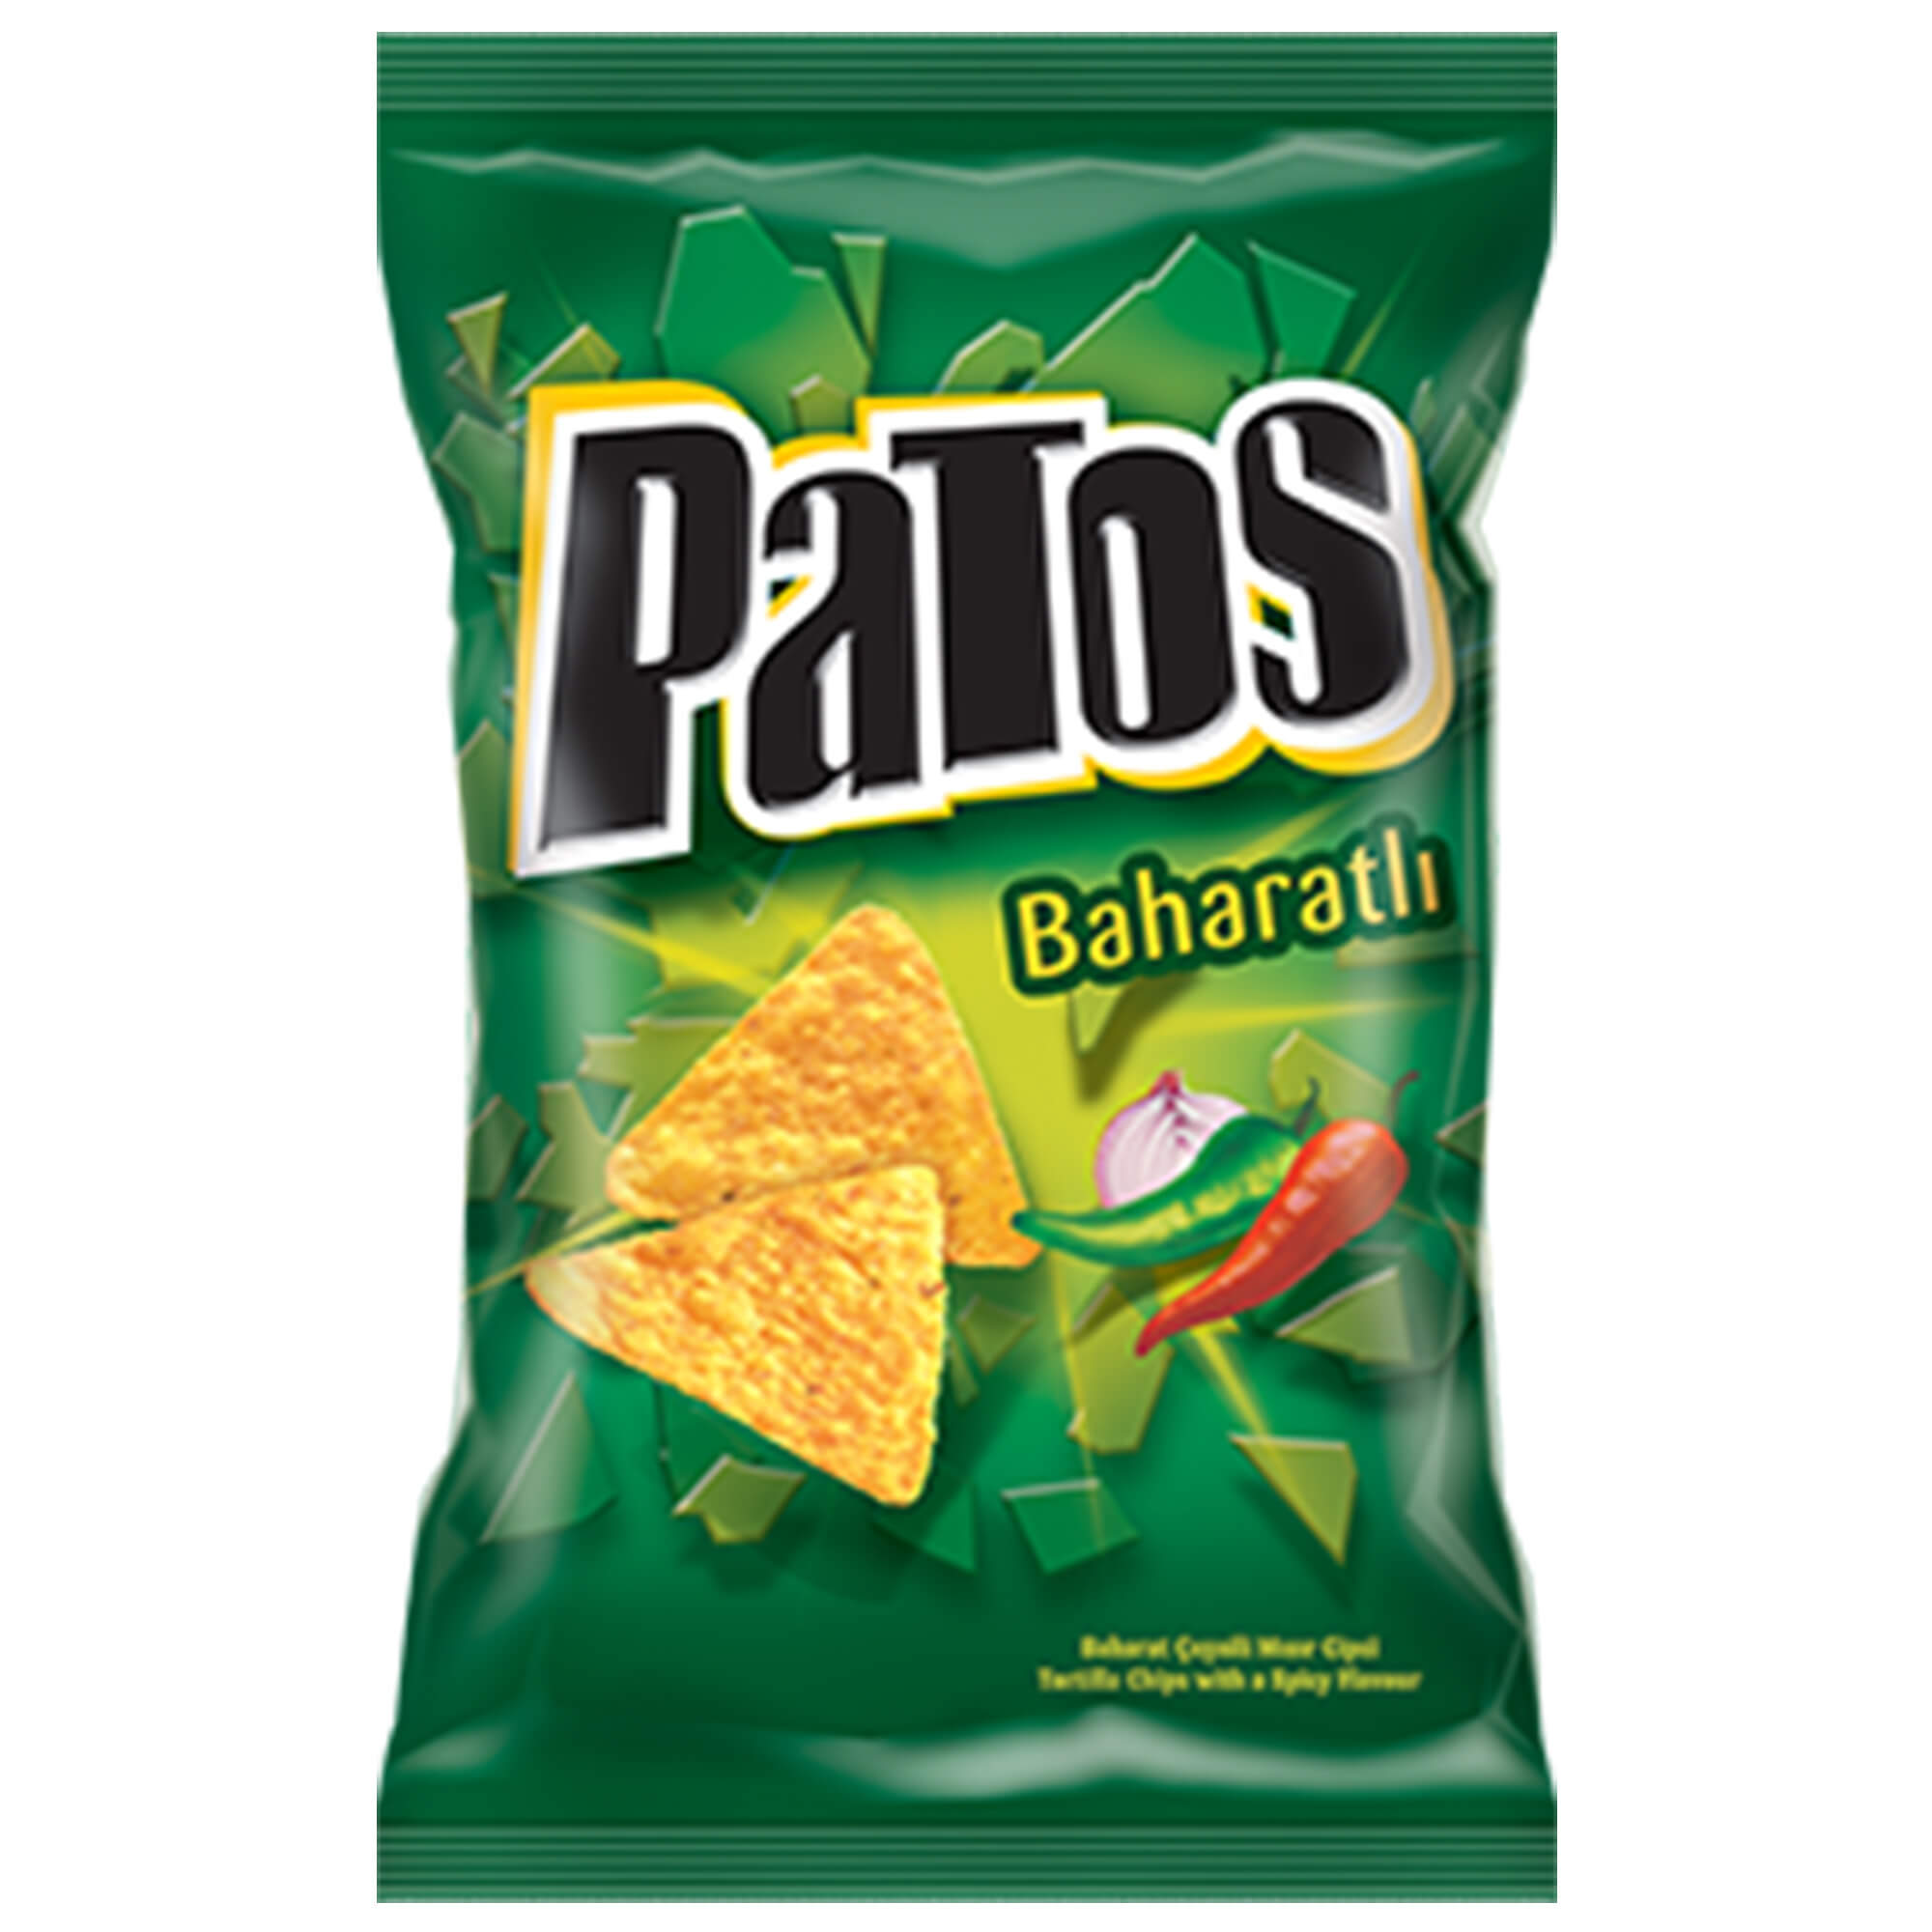 Patos Parti Boy Baharatlı Spicy 165 Gr